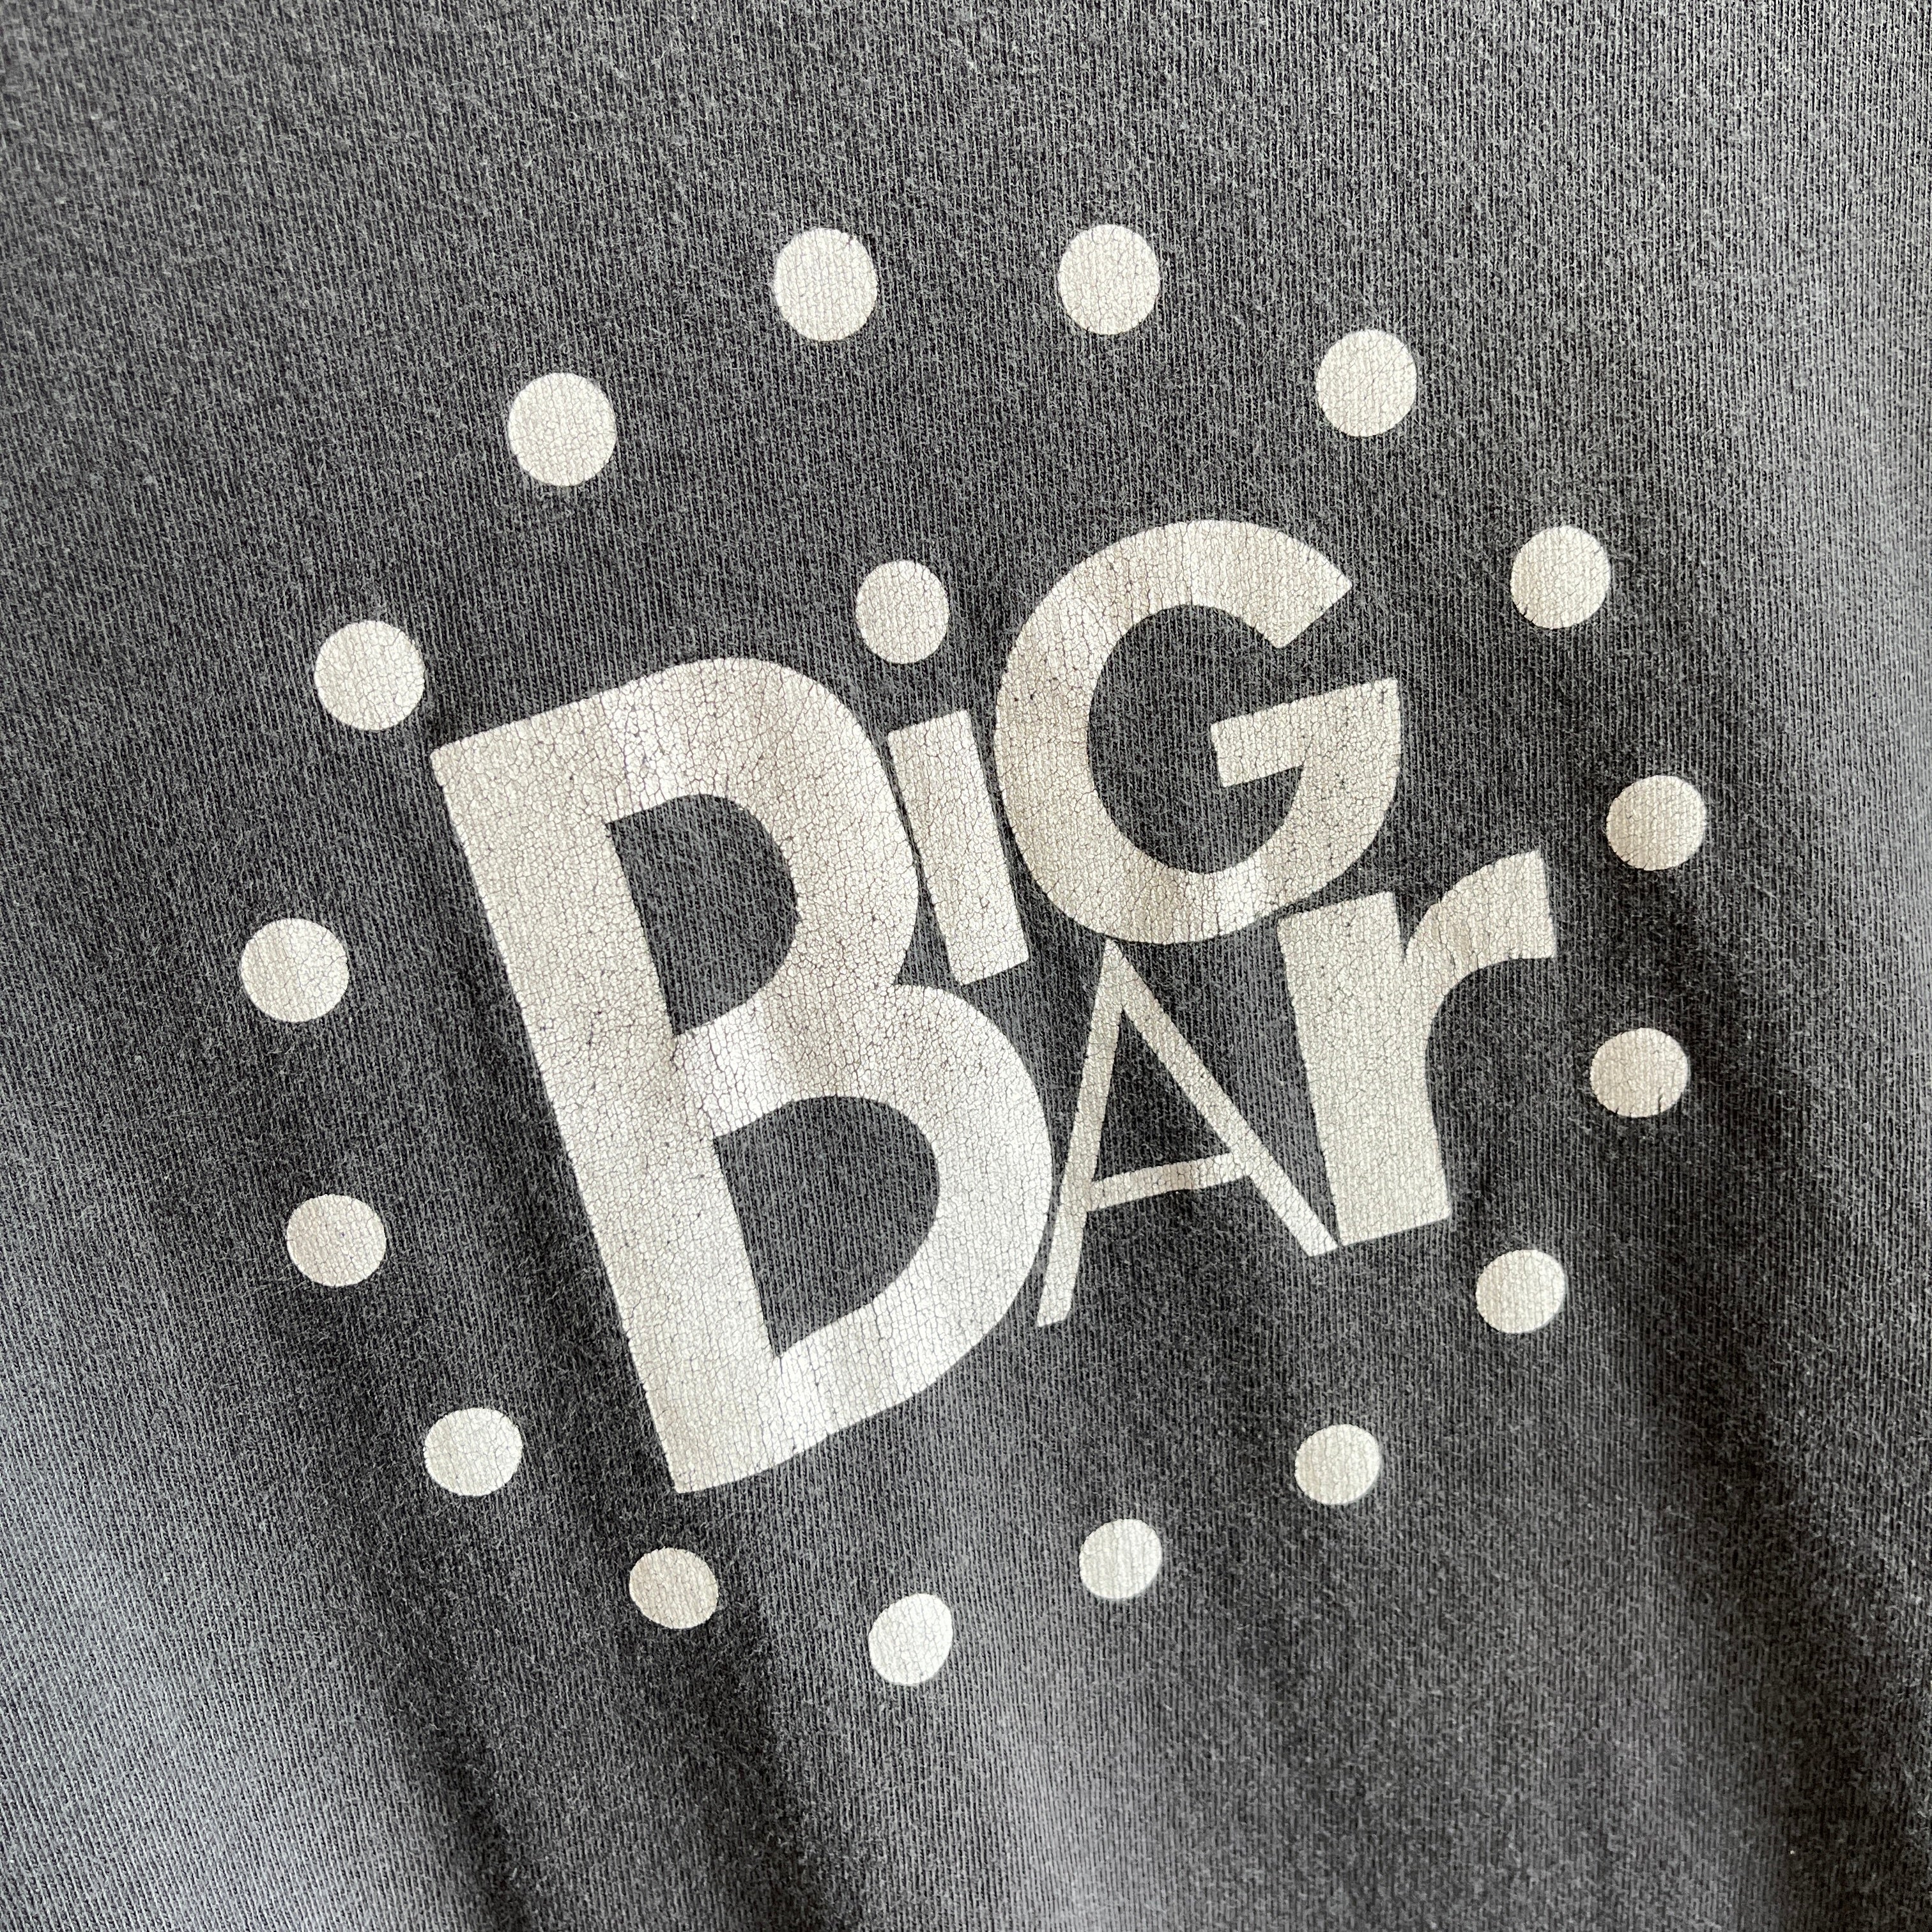 1990s Big Bar T-Shirt